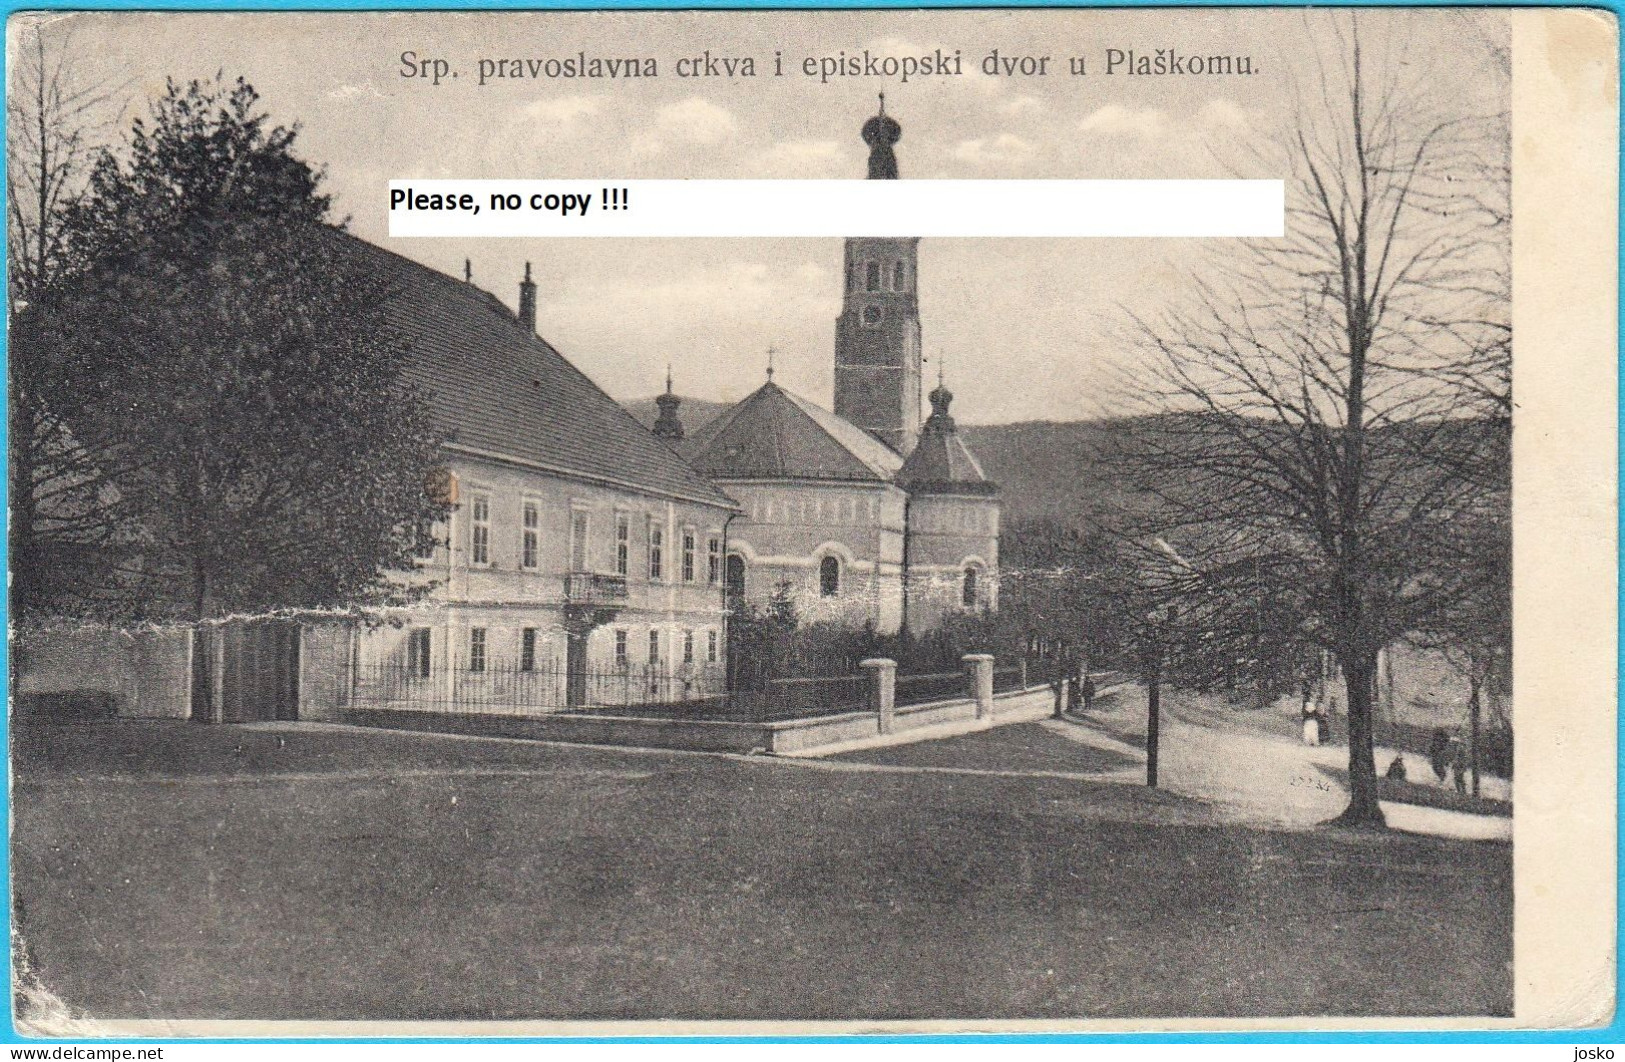 PLAŠKI Near Ogulin (Lika) - Srpska Pravoslavna Crkva I Episkopski Dvor * Croatia * Travelled 1915. * K.u.K. CENSURE - Croatia